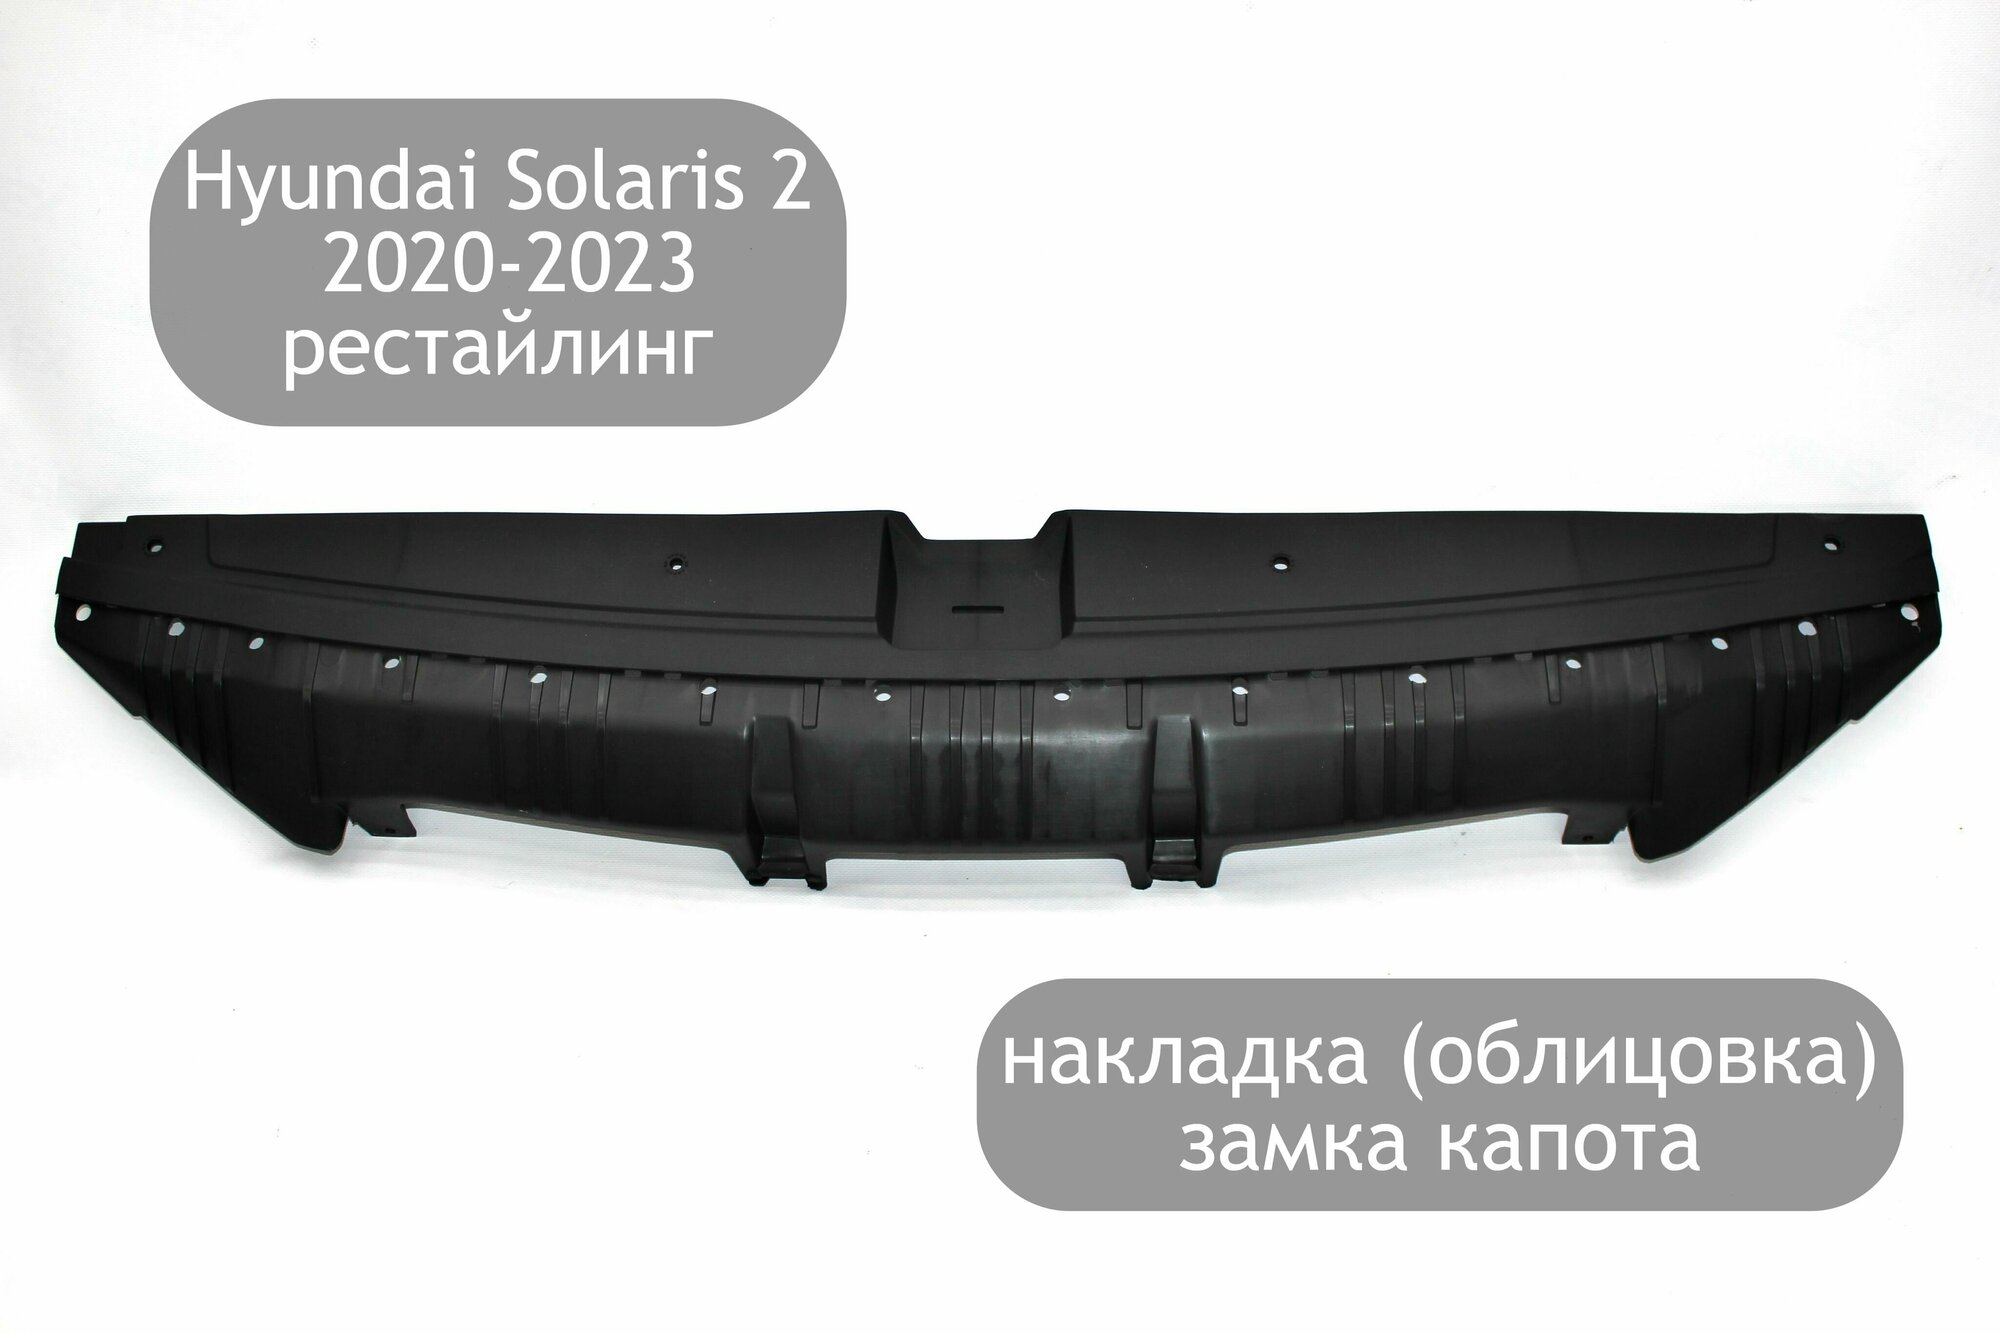 Накладка (облицовка) на верх переднего бампера для Hyundai Solaris 2 2020-2023 накладка замка капота Хендай Солярис 2